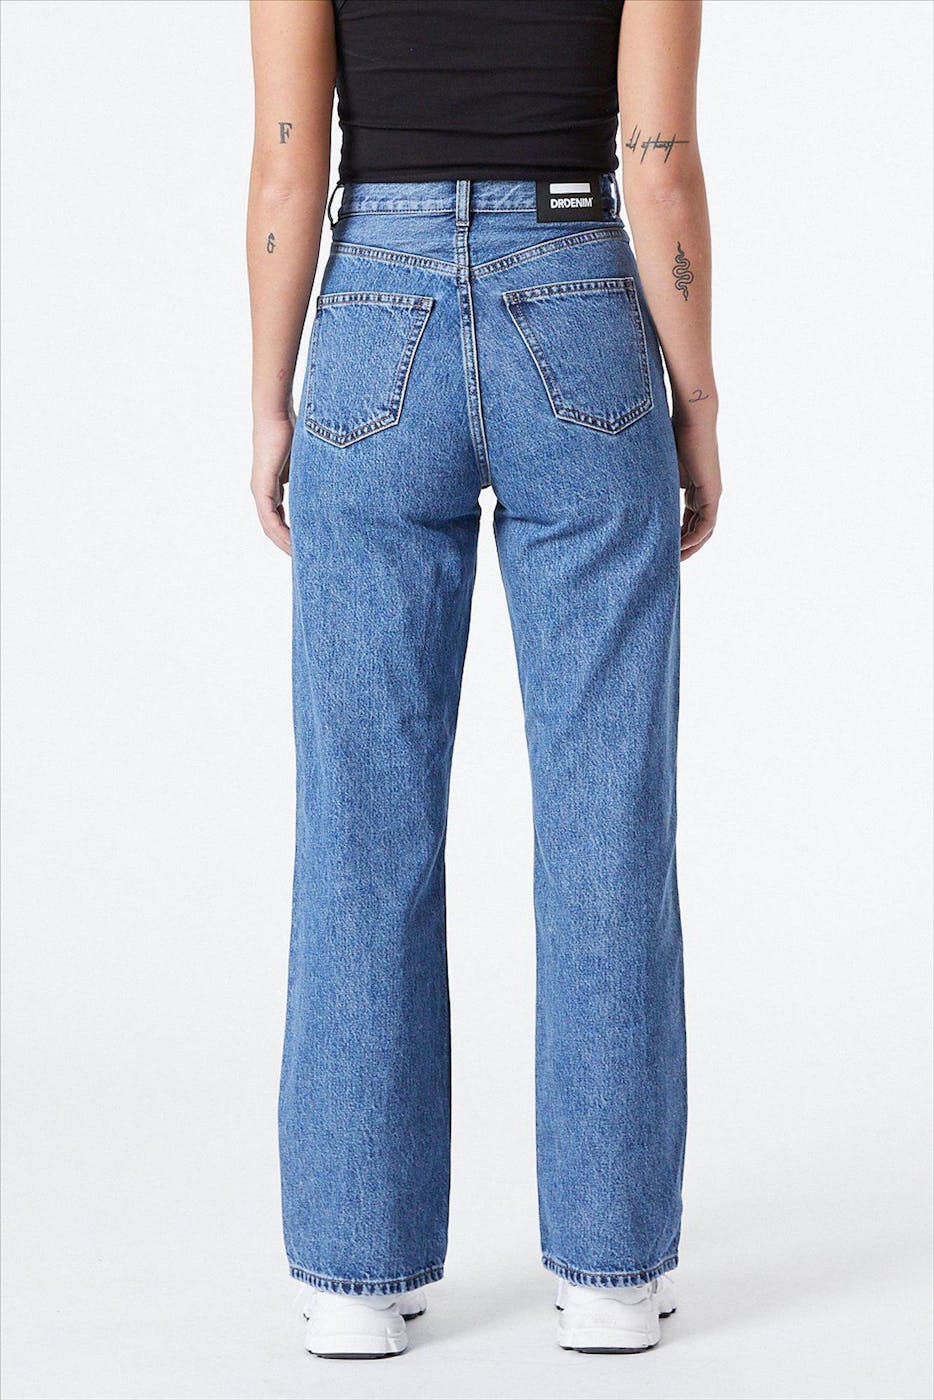 Dr. Denim - Blauwe Echo straight/wide jeans